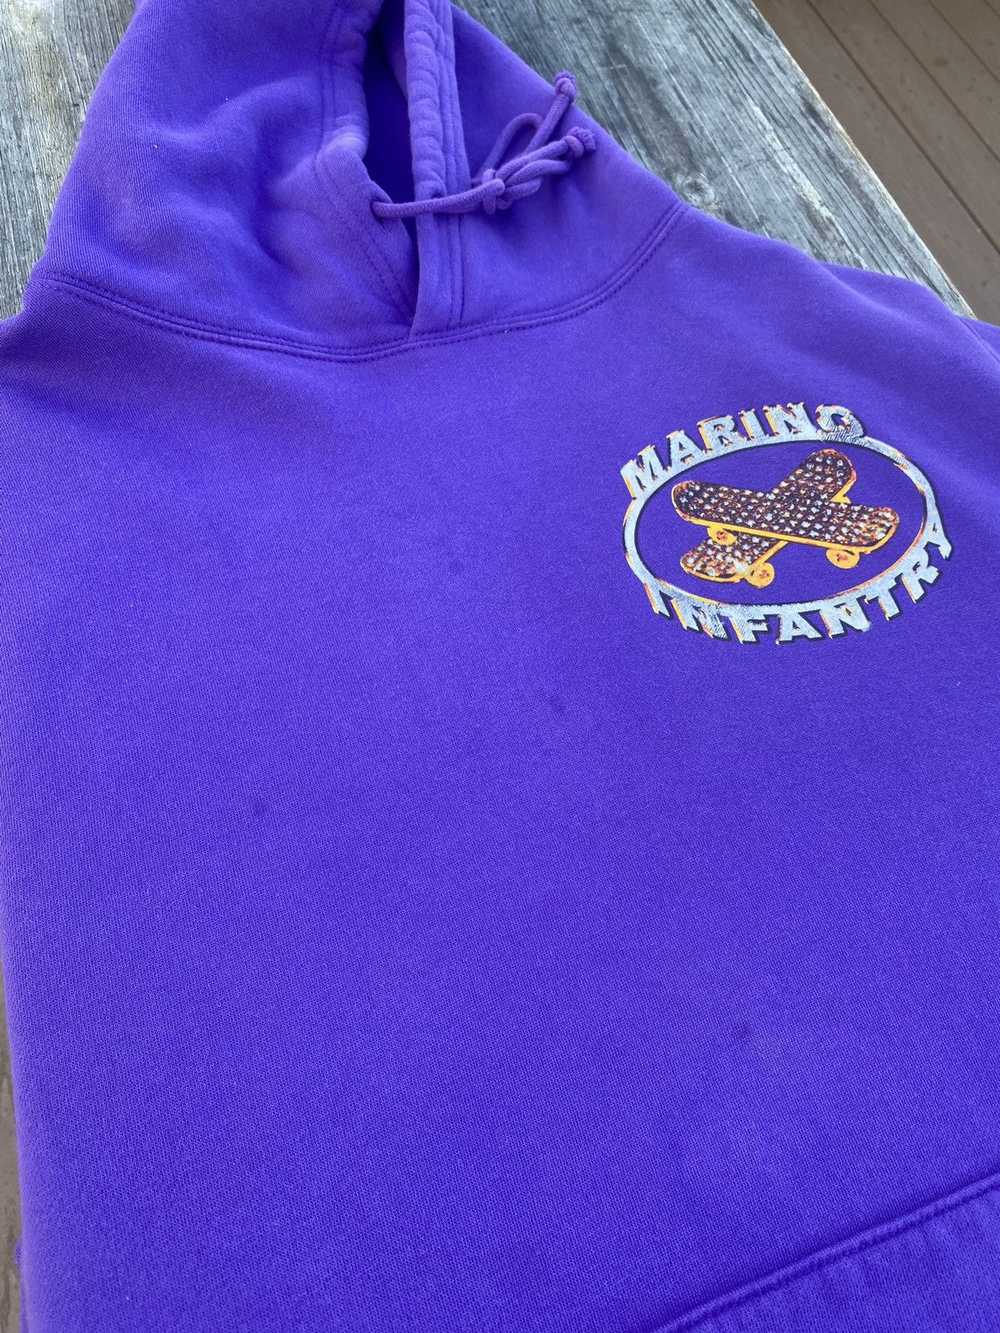 Marino Infantry Marino Infantry Purple Hoodie - image 3